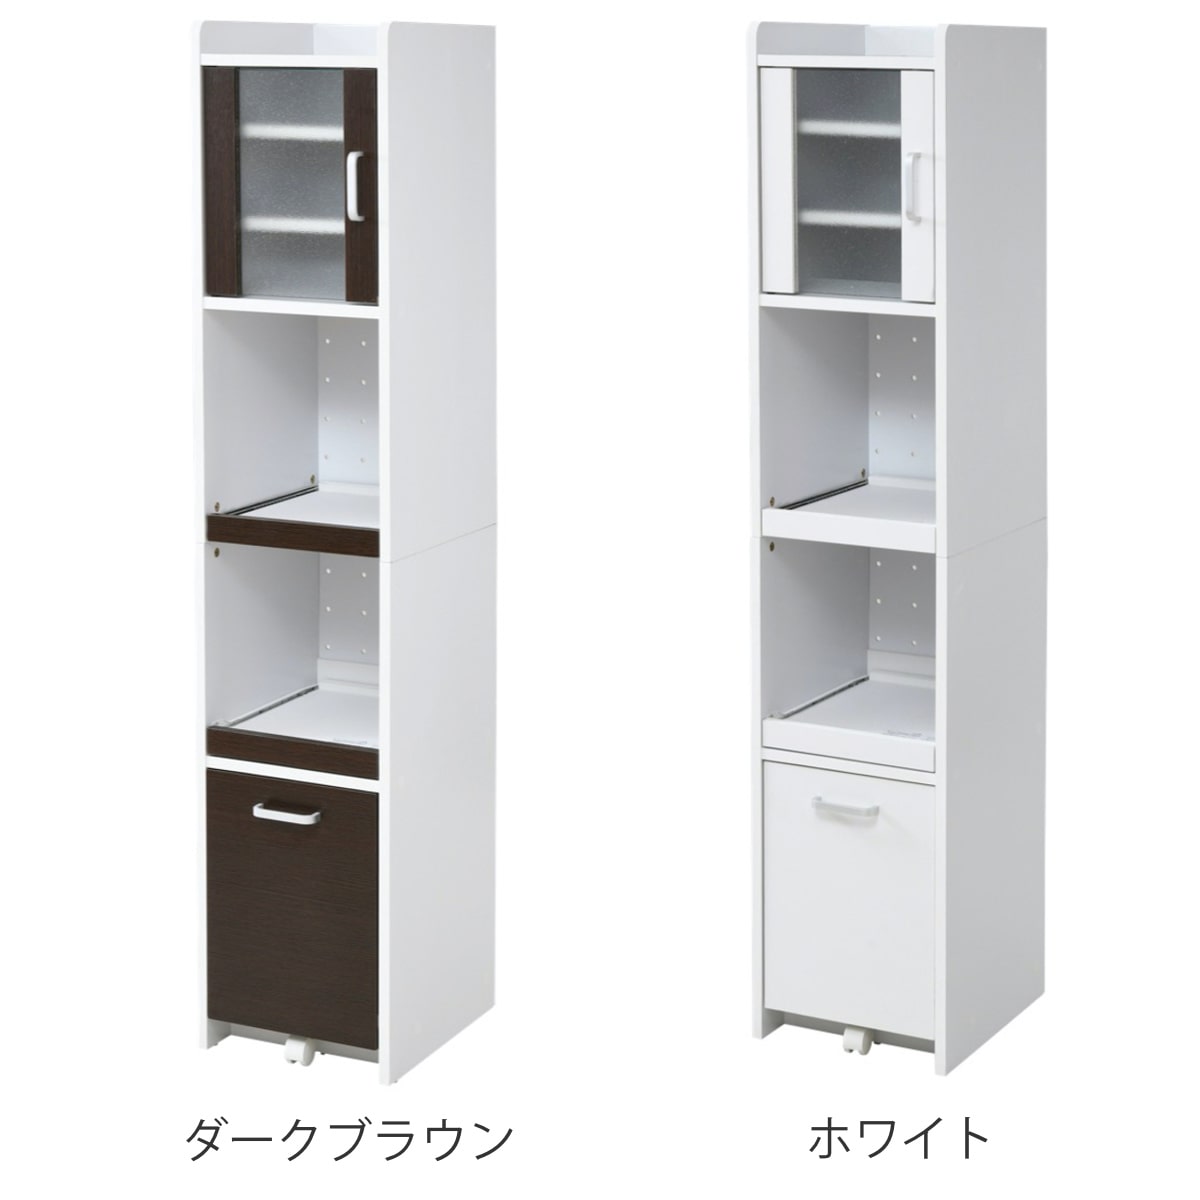 キッチンラック 食器棚 ストッカー付 すき間収納 高さ161cm 